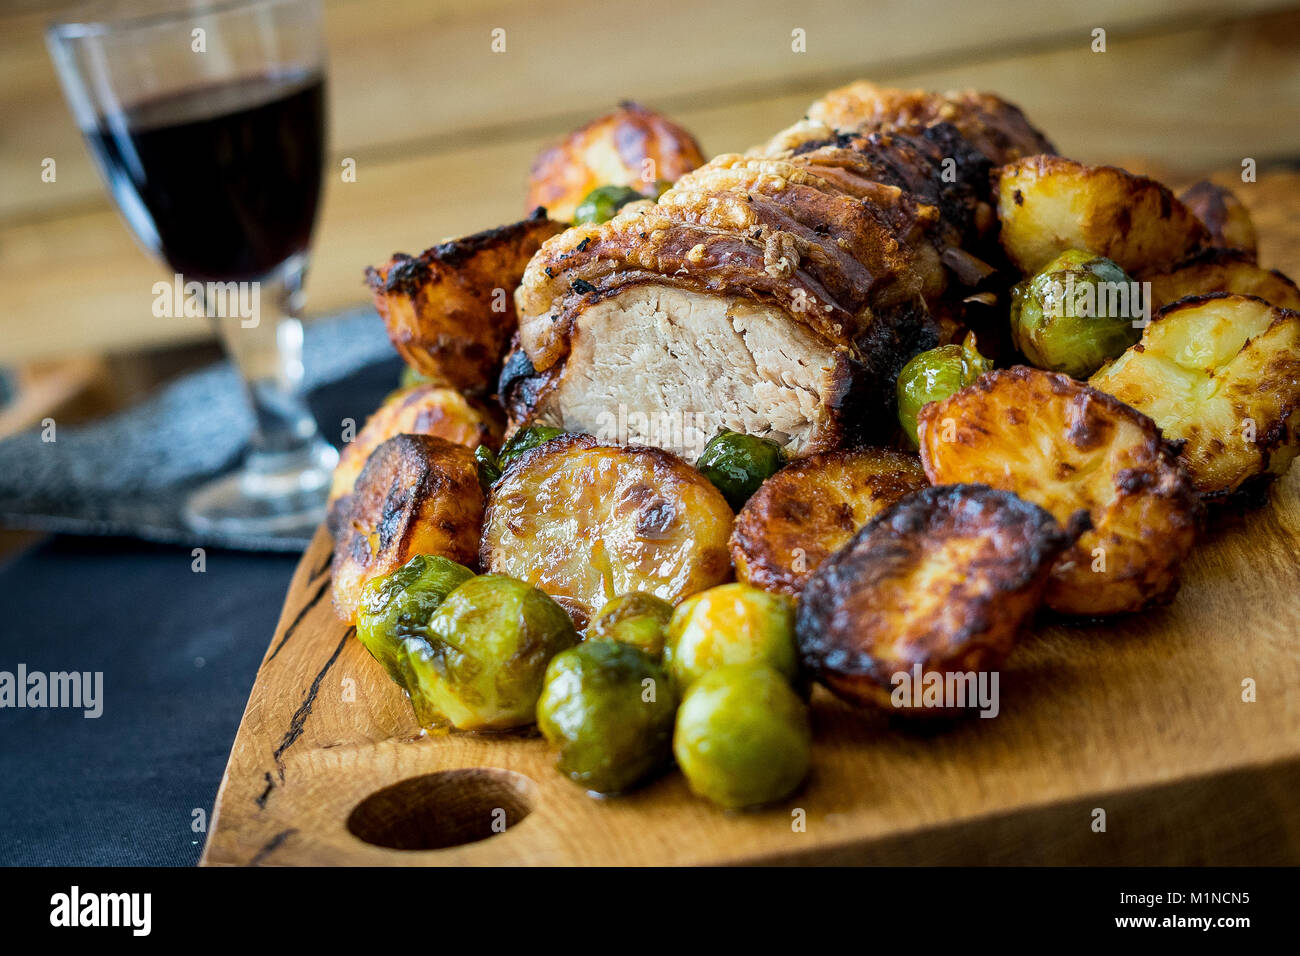 Roast Pork Dinner Stock Photo